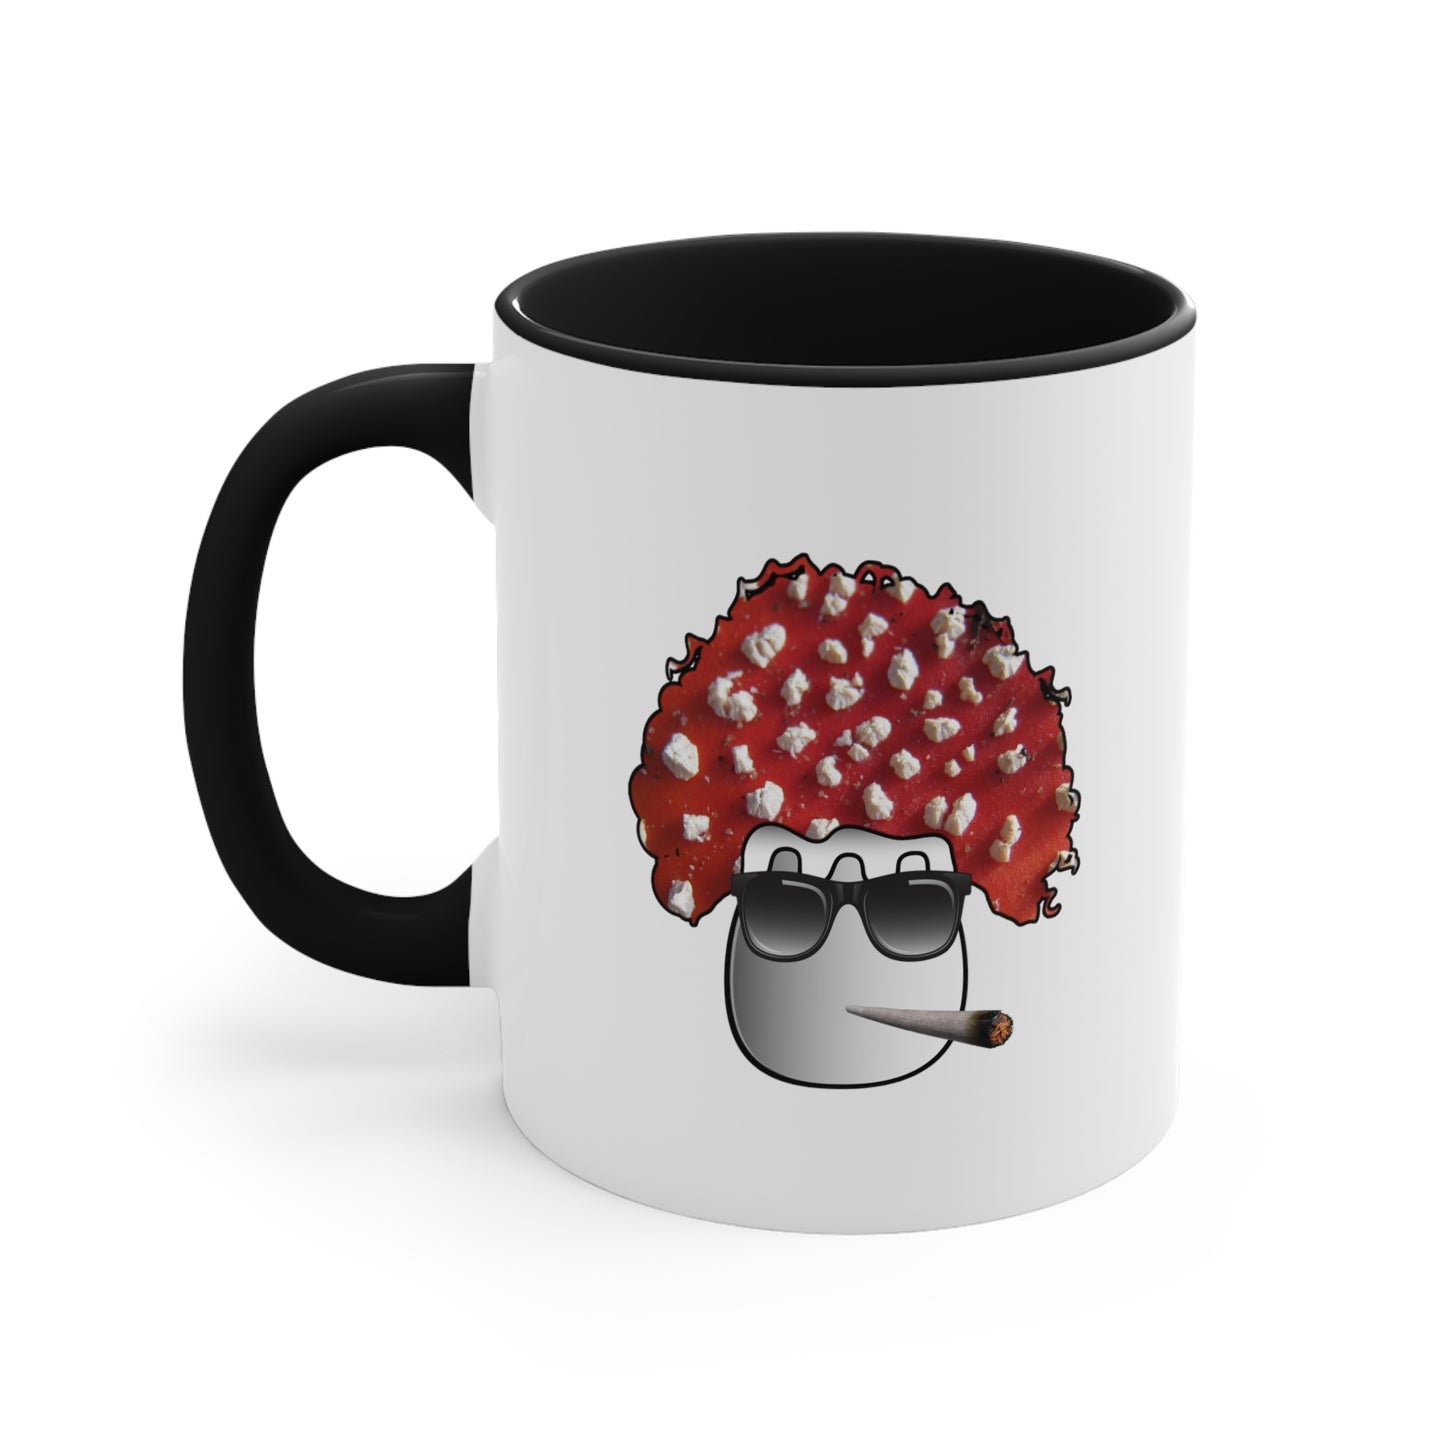 Frasco Shroom - Coffee Mug